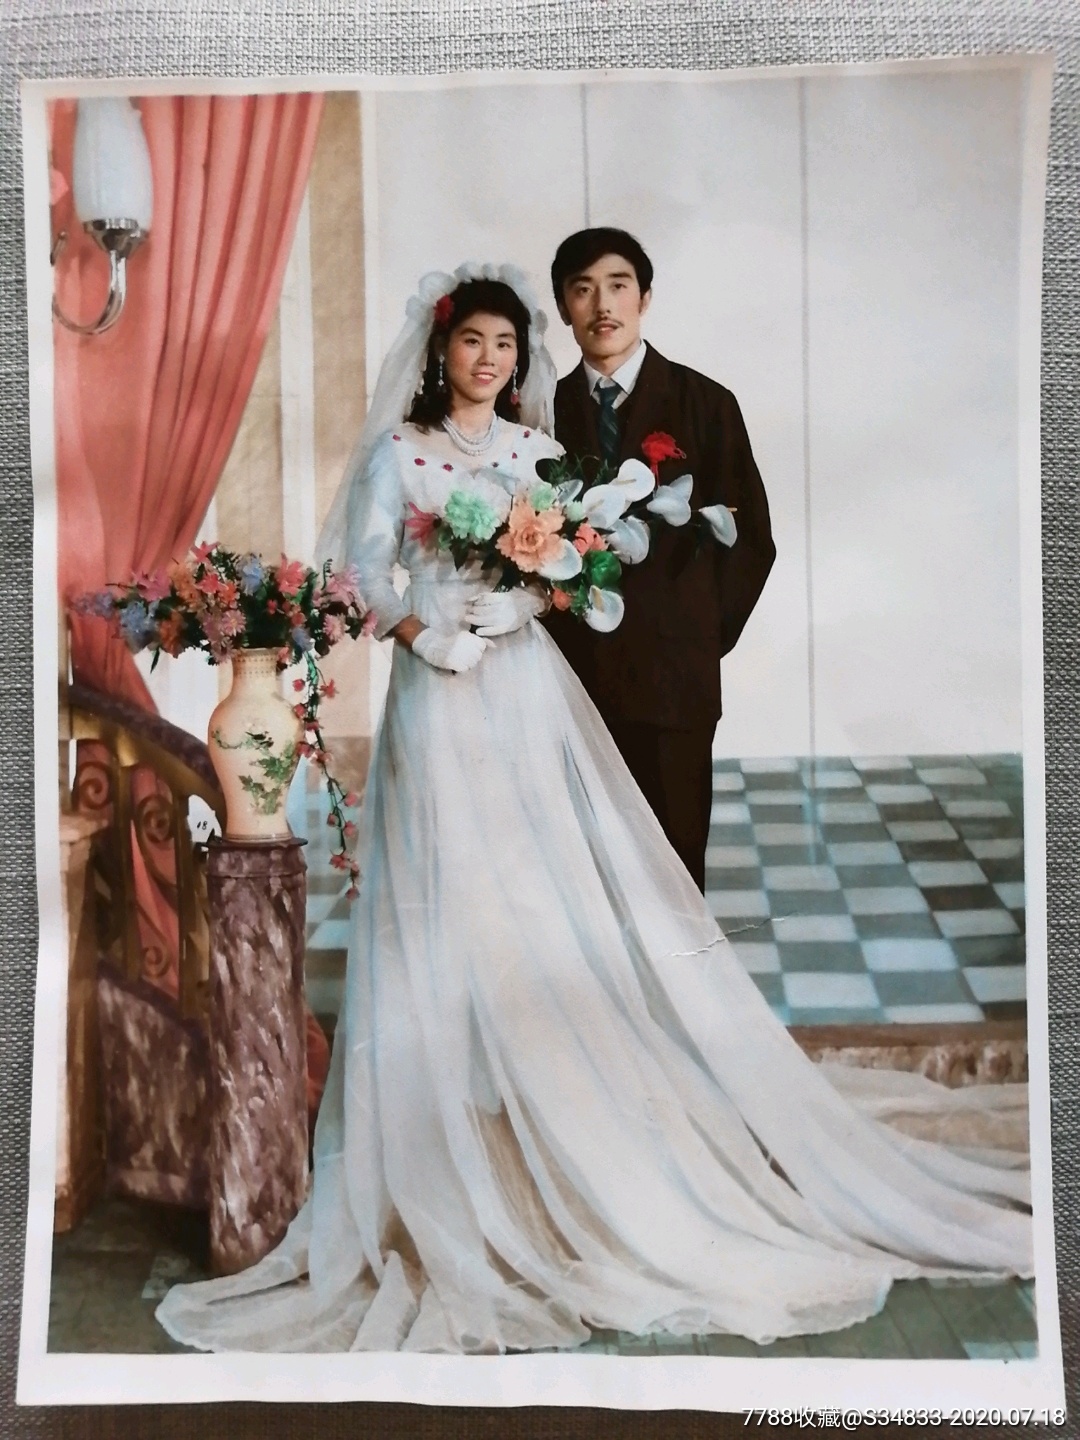 00年代婚纱照图片